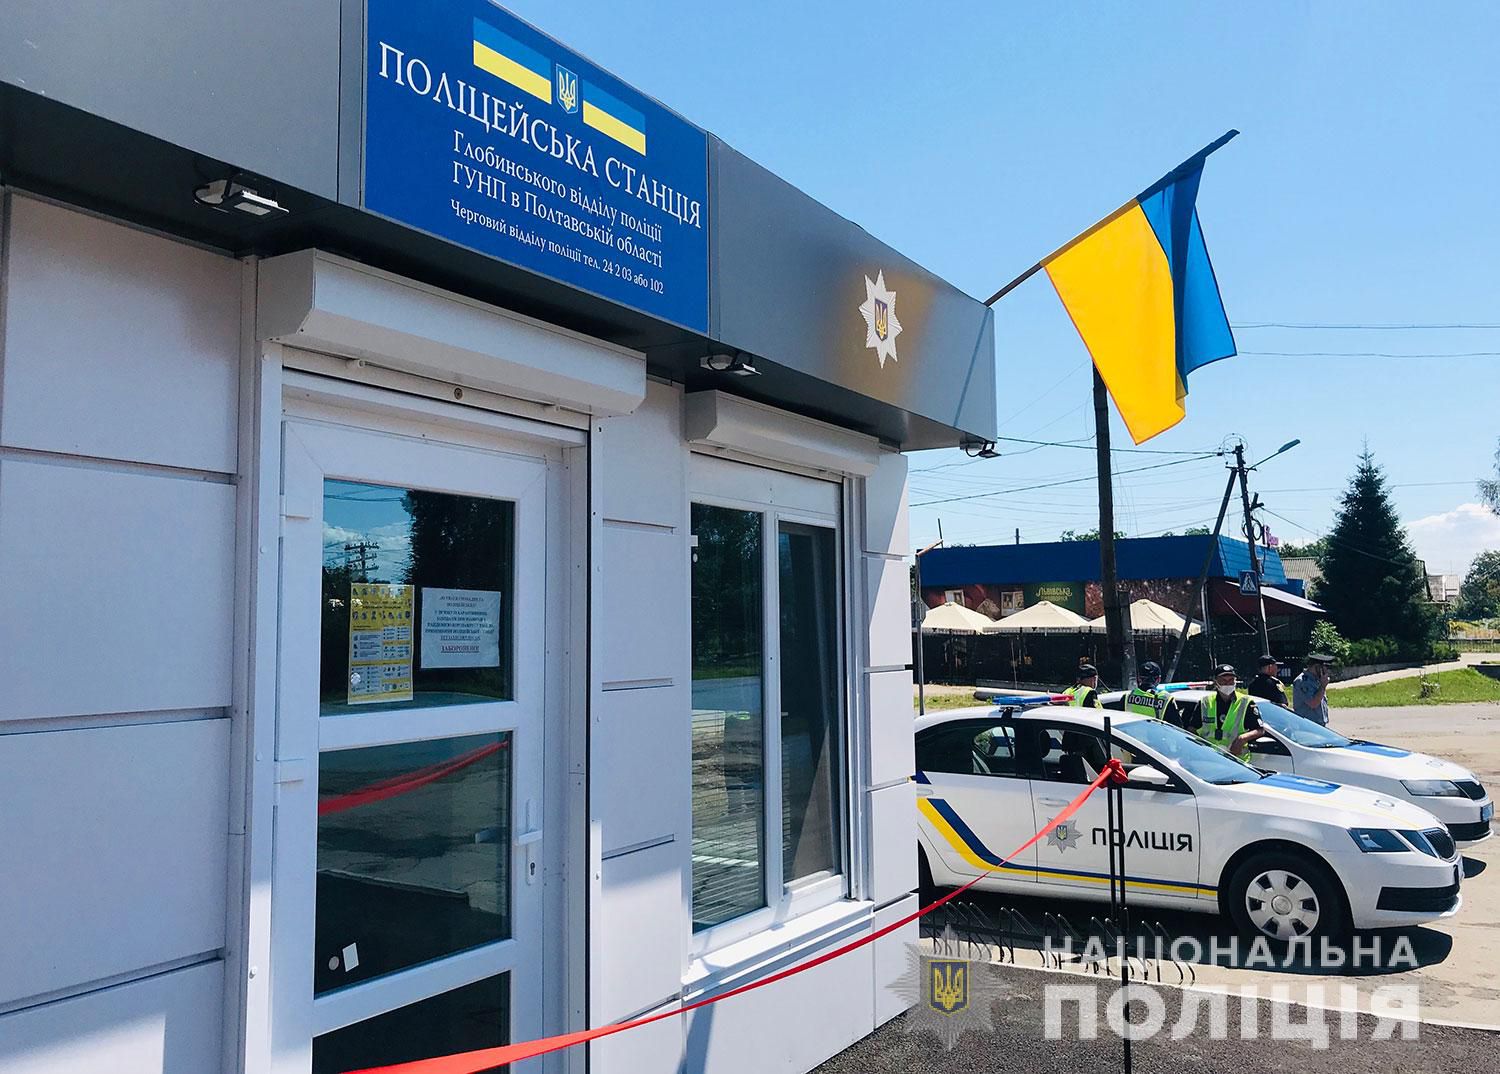 Полтавщина: Поліцейська станція з’явилася у «столиці» тіньового рибного бізнесу